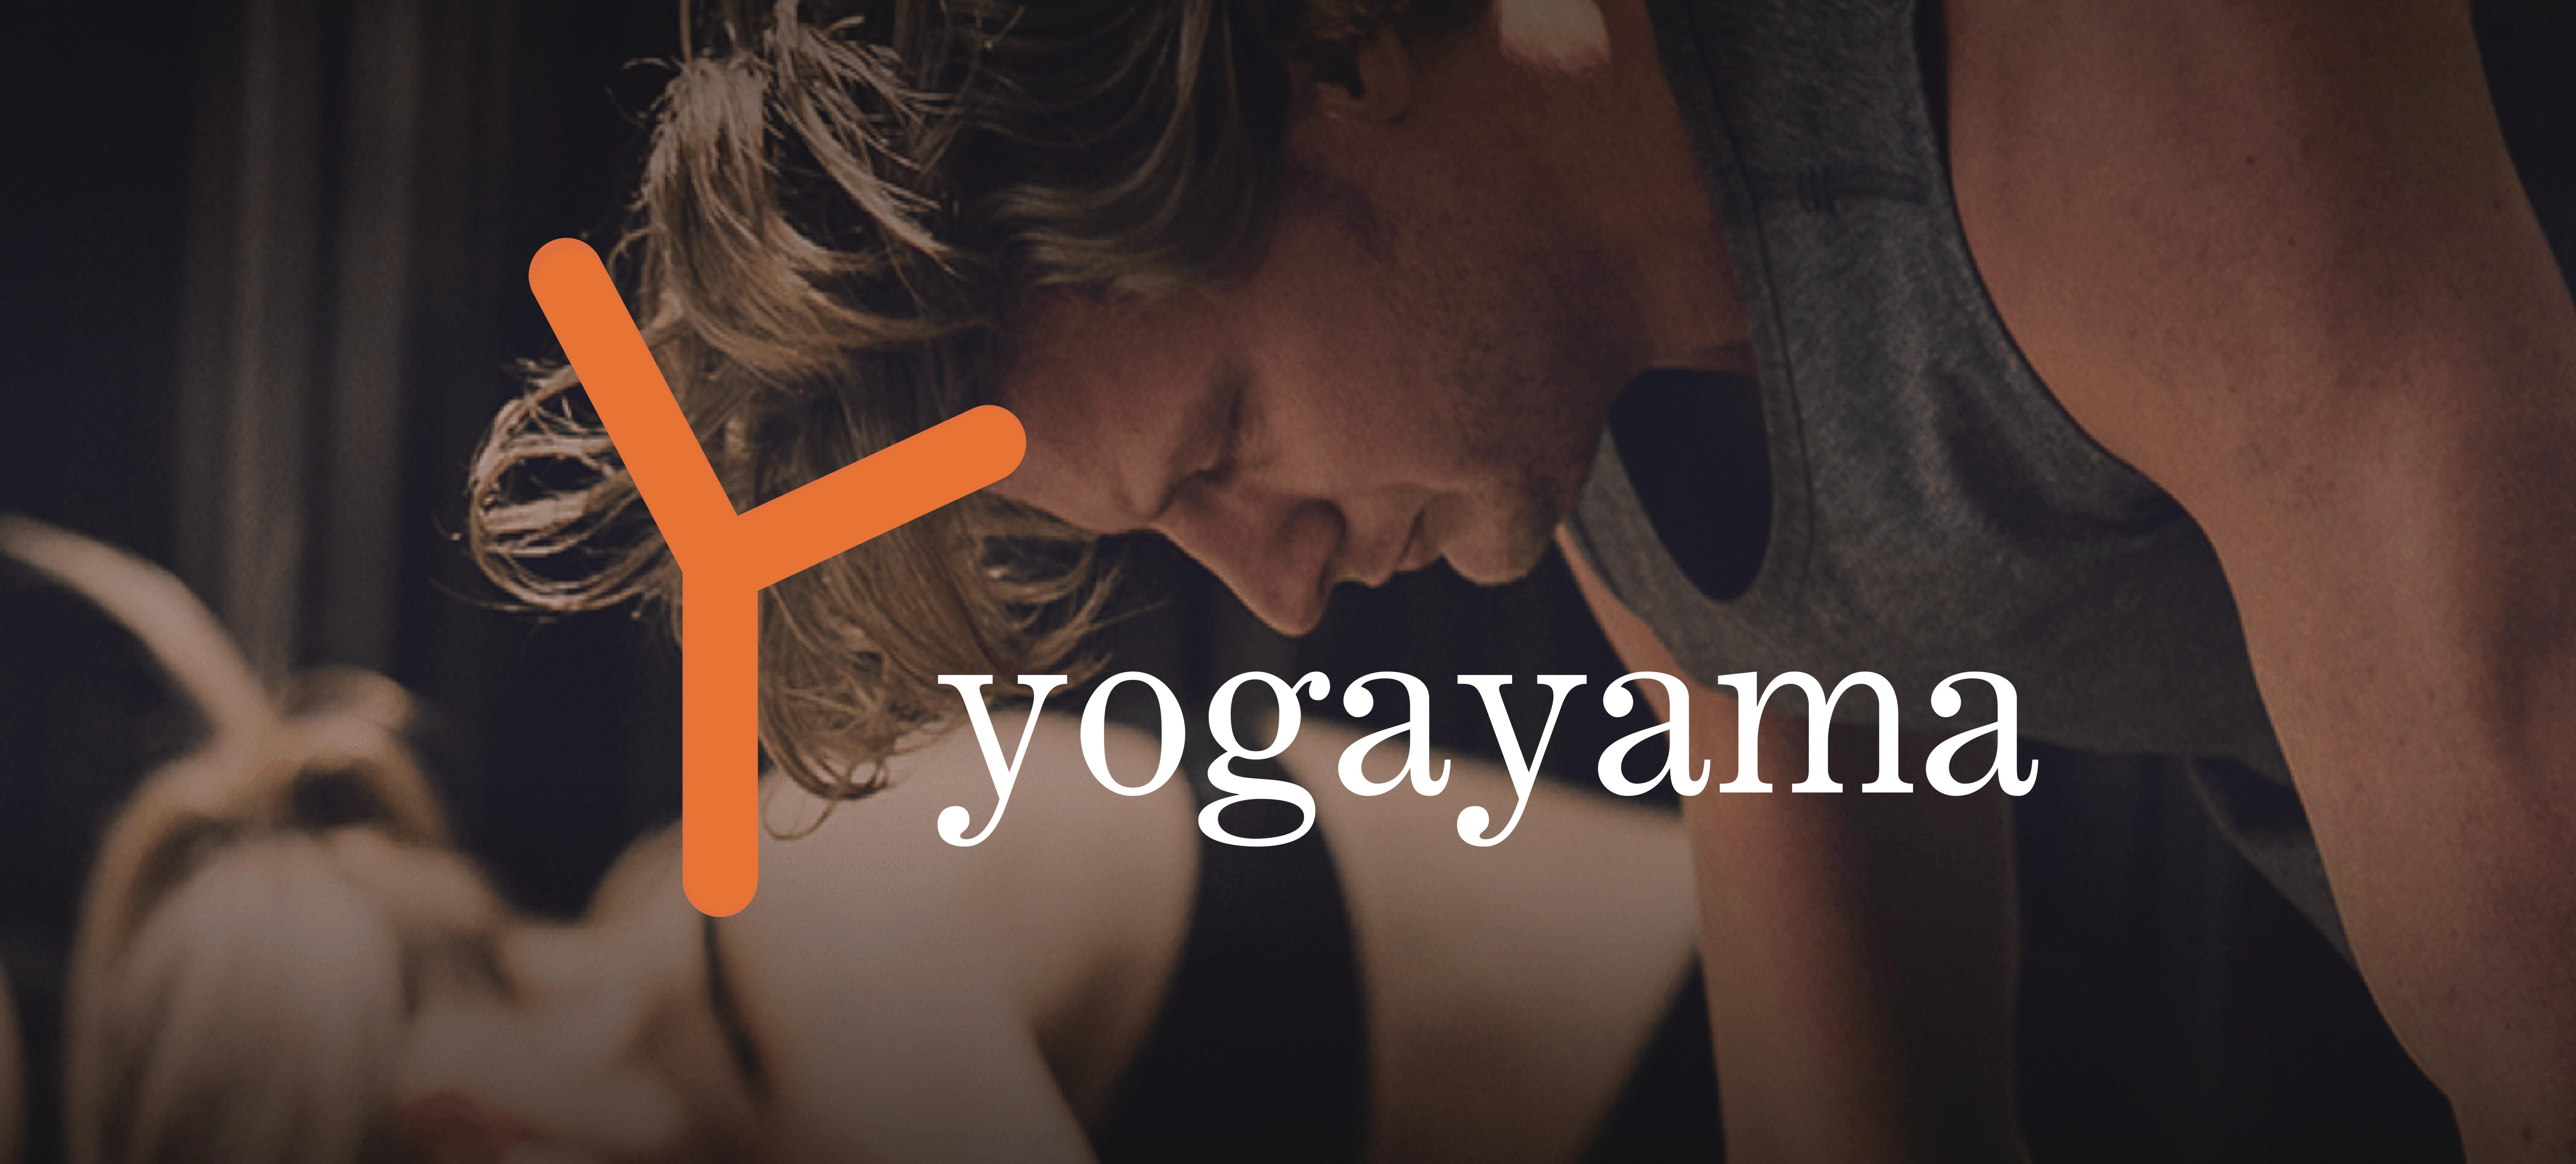 Yogayama card image